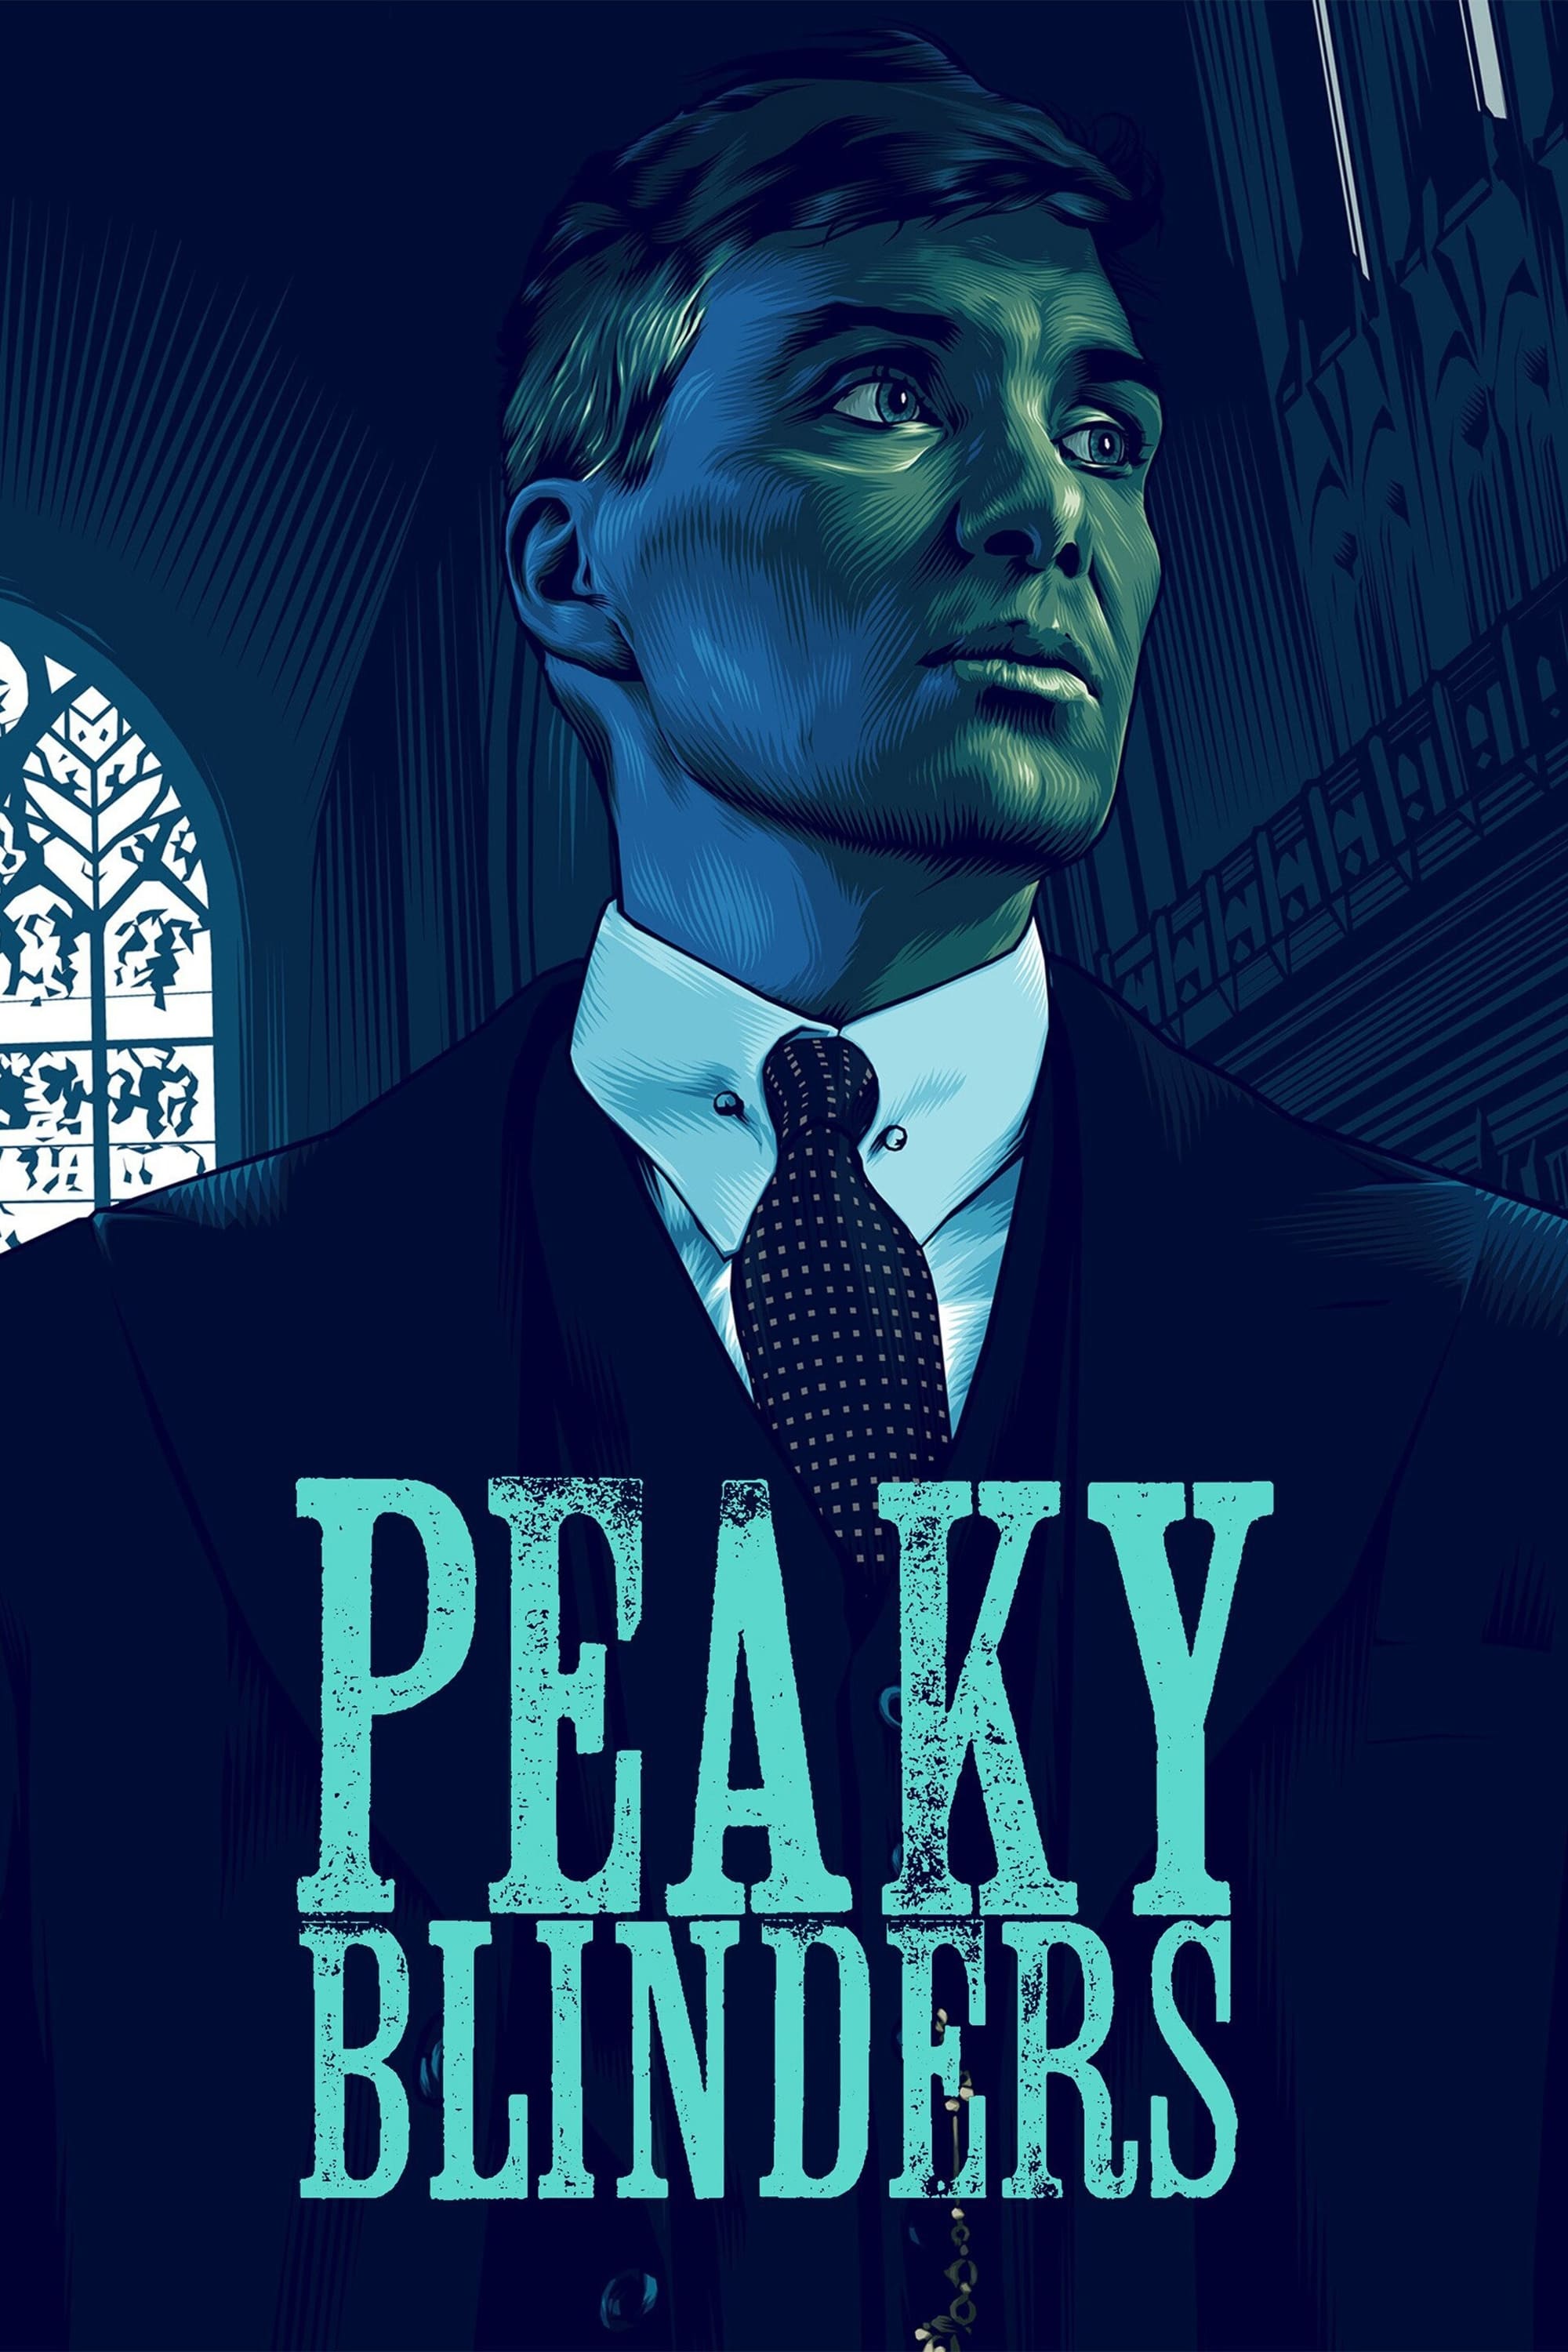 Peaky Blinders – Gangs of Birmingham (2013)